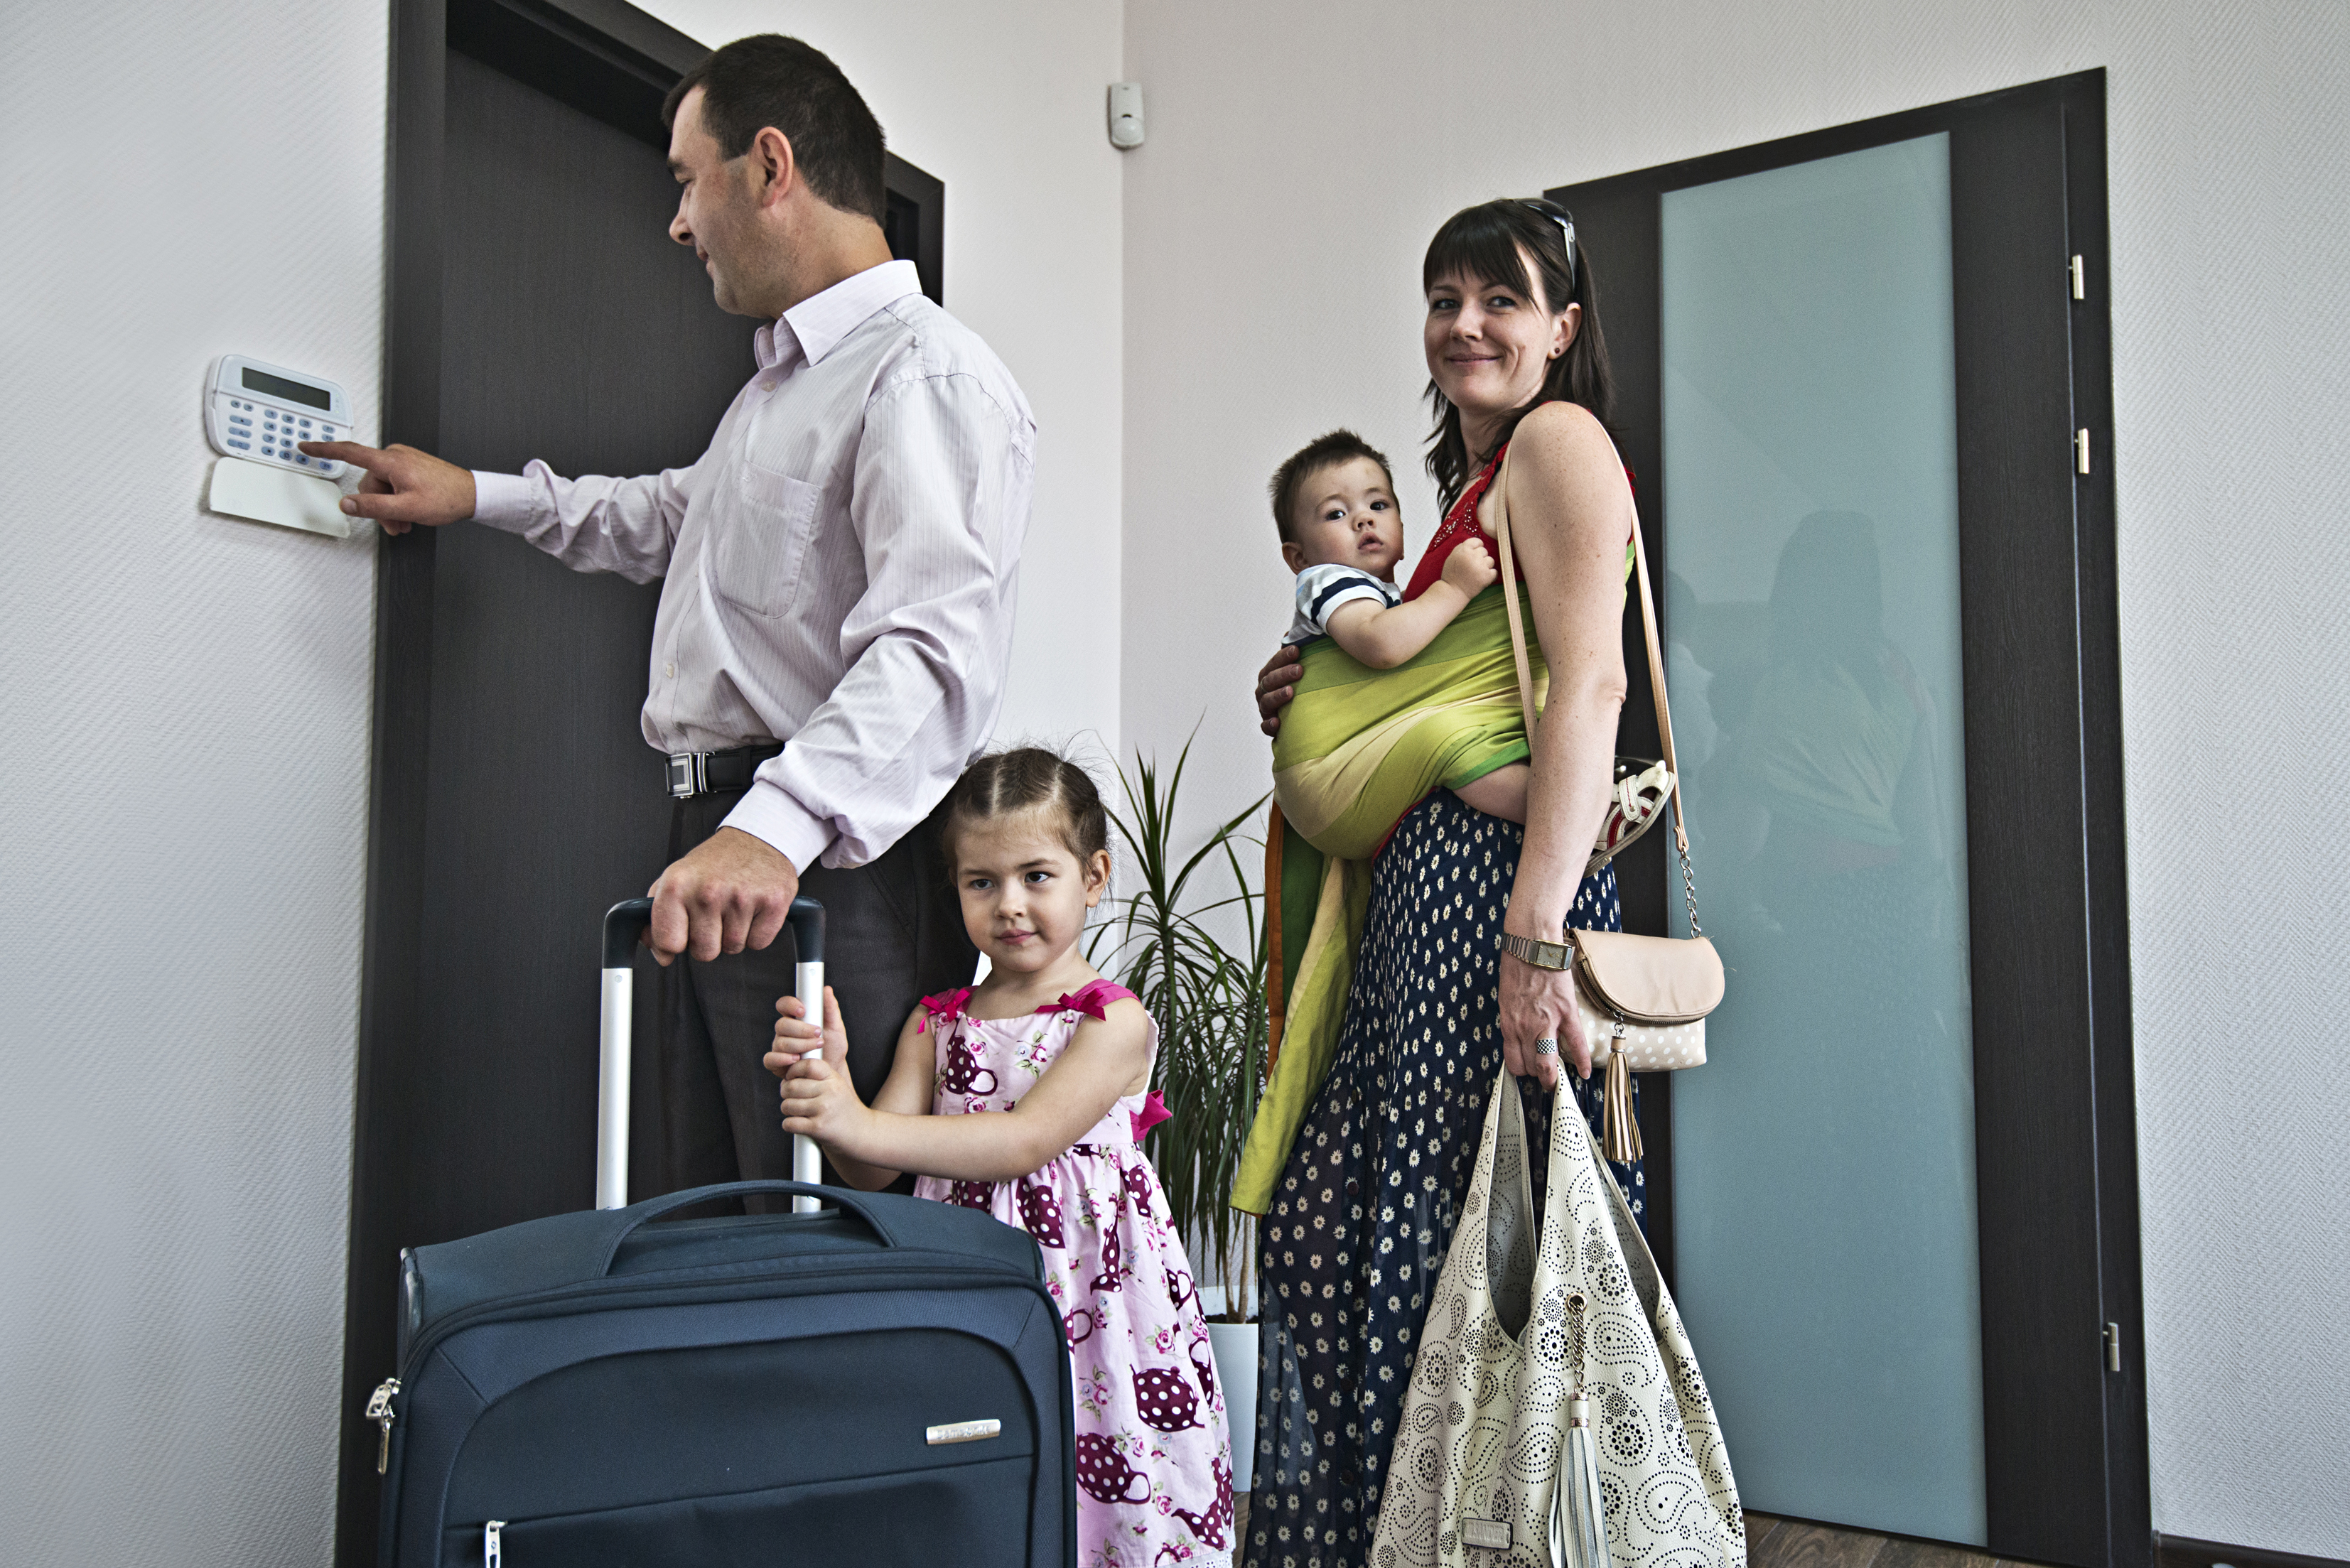 Семейный сторож. Охрана квартиры. Пультовая охрана квартир. Семья с чемоданами в квартире. Безопасность семьи в квартире.